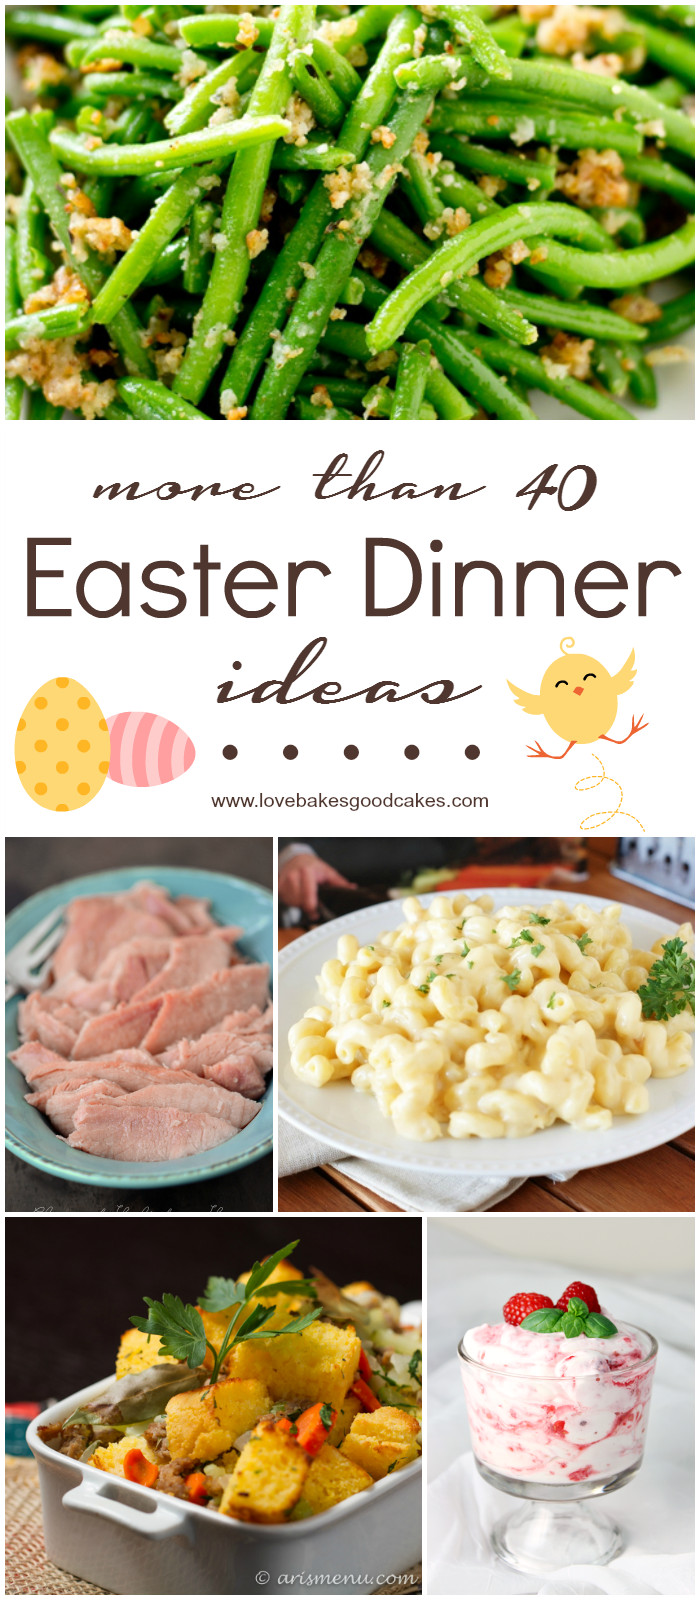 Easter Dinner Meal Ideas
 More than 40 Easter Dinner Ideas